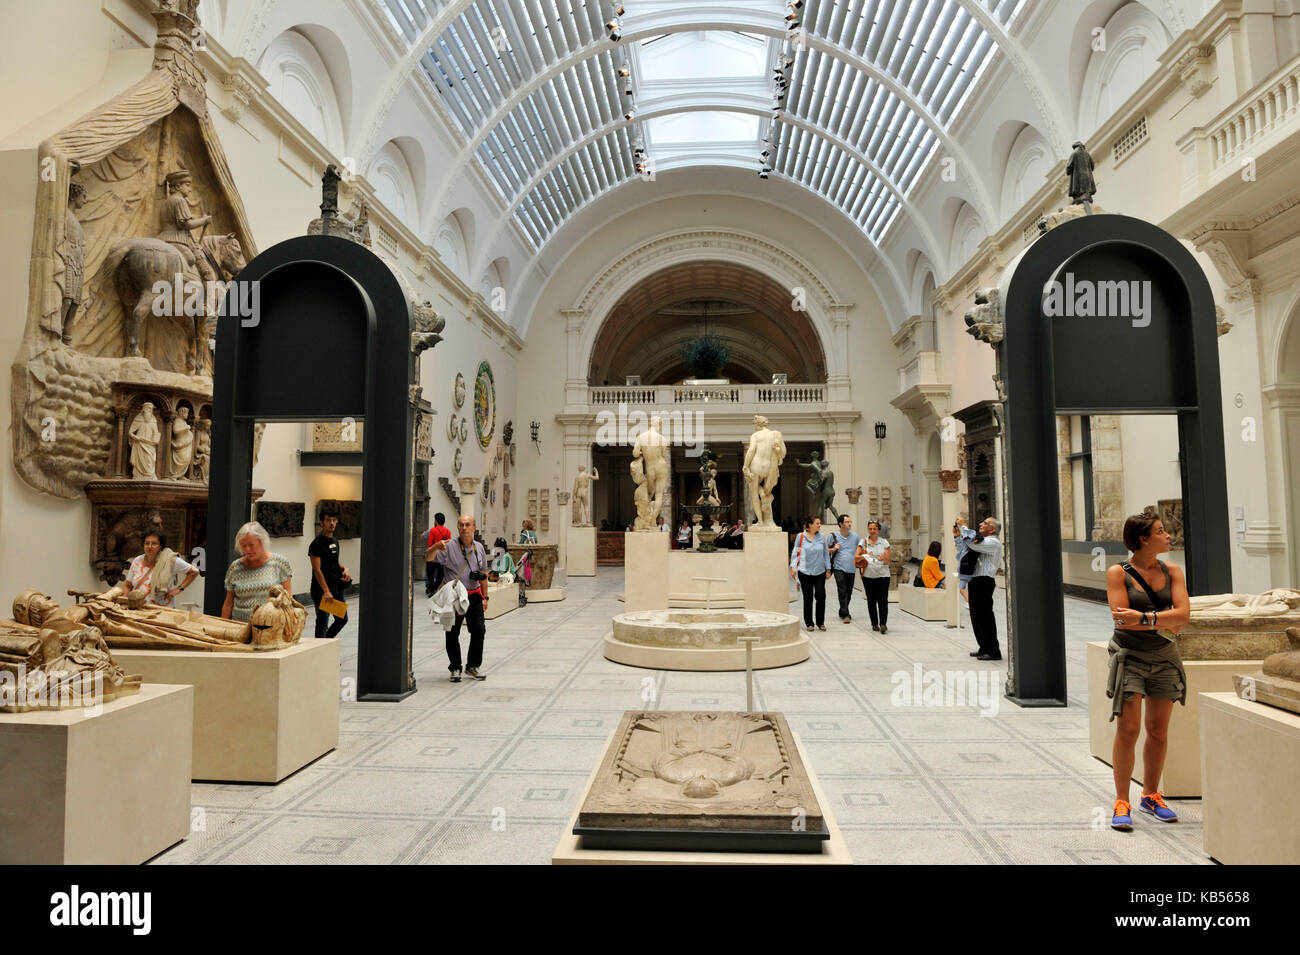 Royaume-uni, Londres, South Kensington, Victoria and Albert Museum (V&A Museum) fondée en 1852, salle dédiée aux sculptures européennes du moyen âge et de la renaissance Banque D'Images